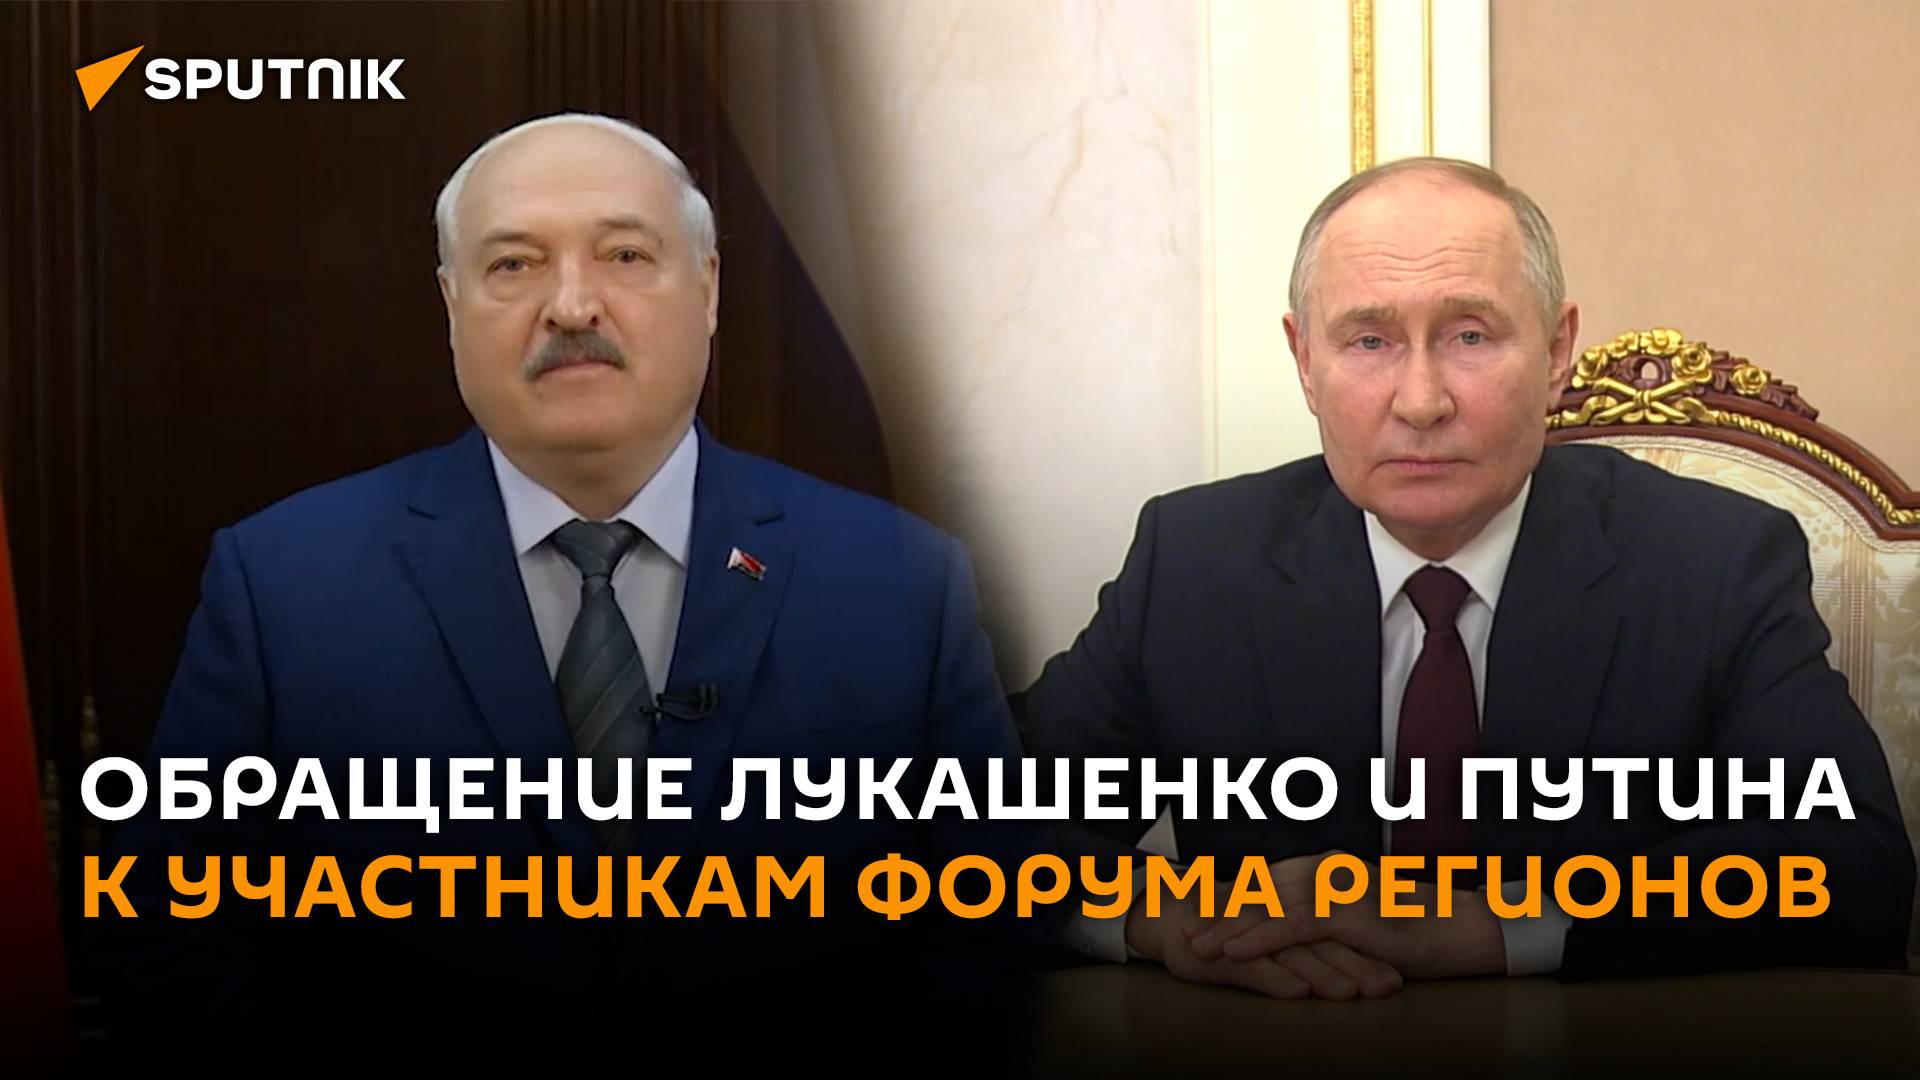 Александр Лукашенко и Владимир Путин обратились к участникам XI Форума регионов